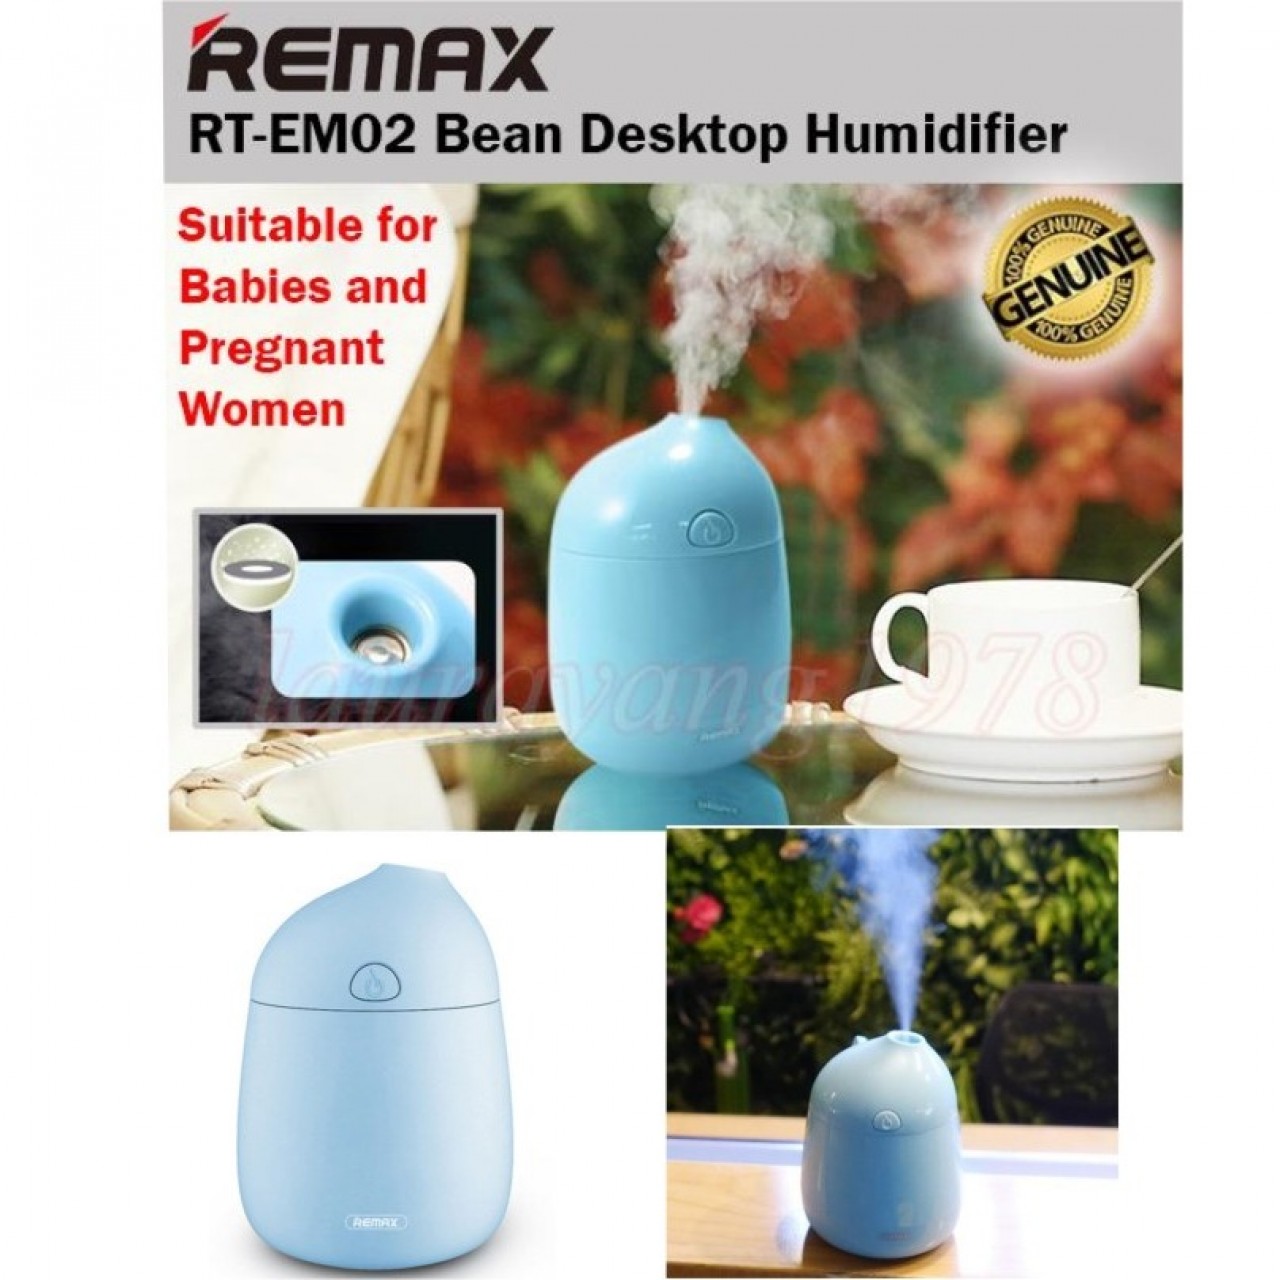 Remax Bean Series Desktop Humidifier RT-EM02 - Blue